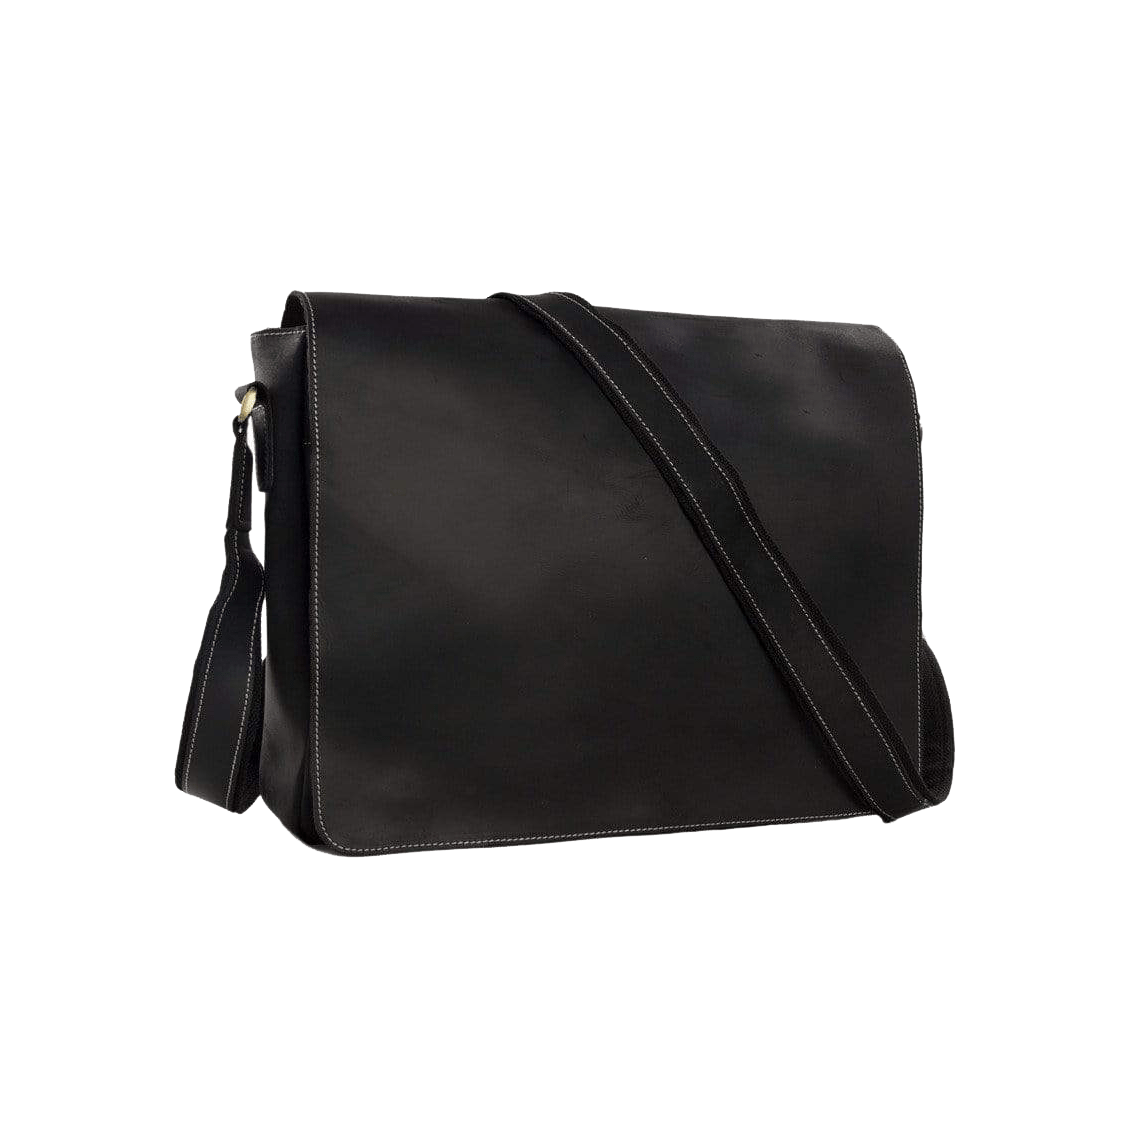 leathercross custom shoulderbag allblackショルダーバッグ